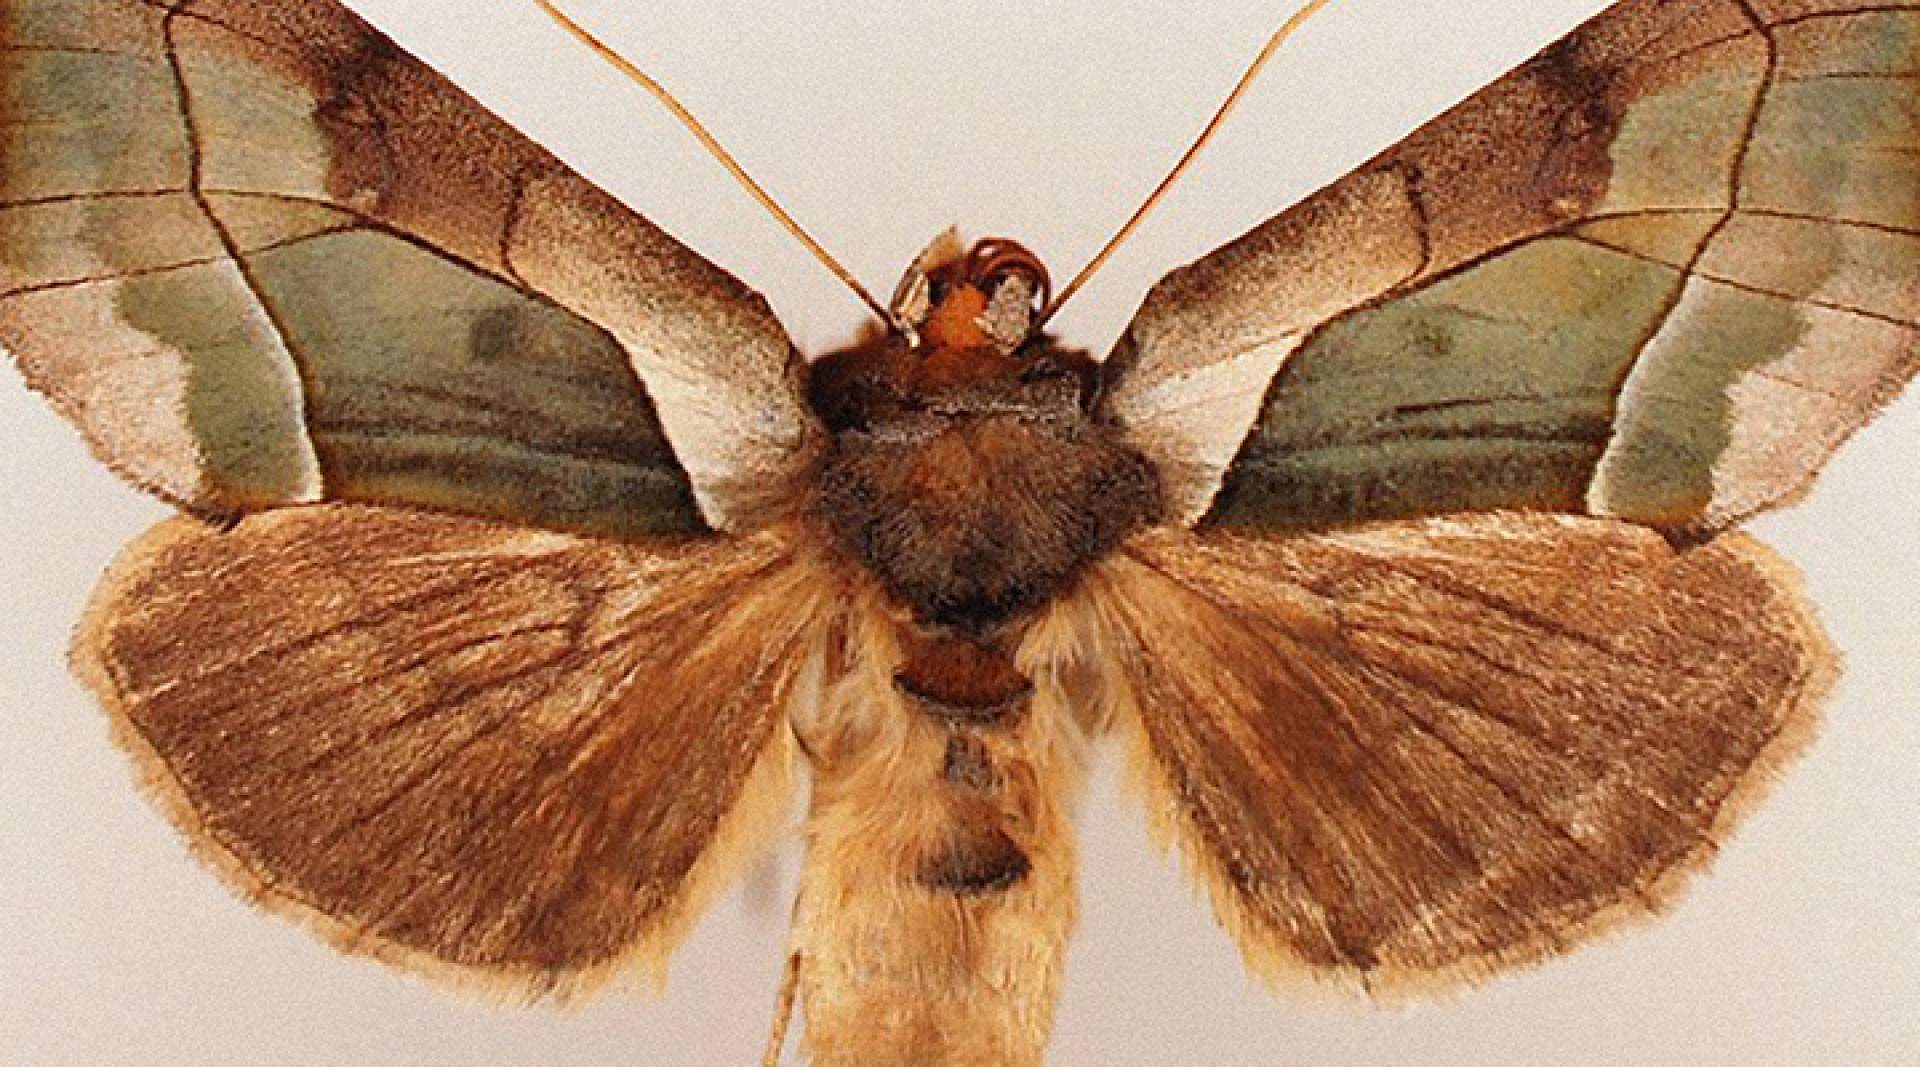 [Joseph Scheer, Moth] - Burchfield Penney Art Center